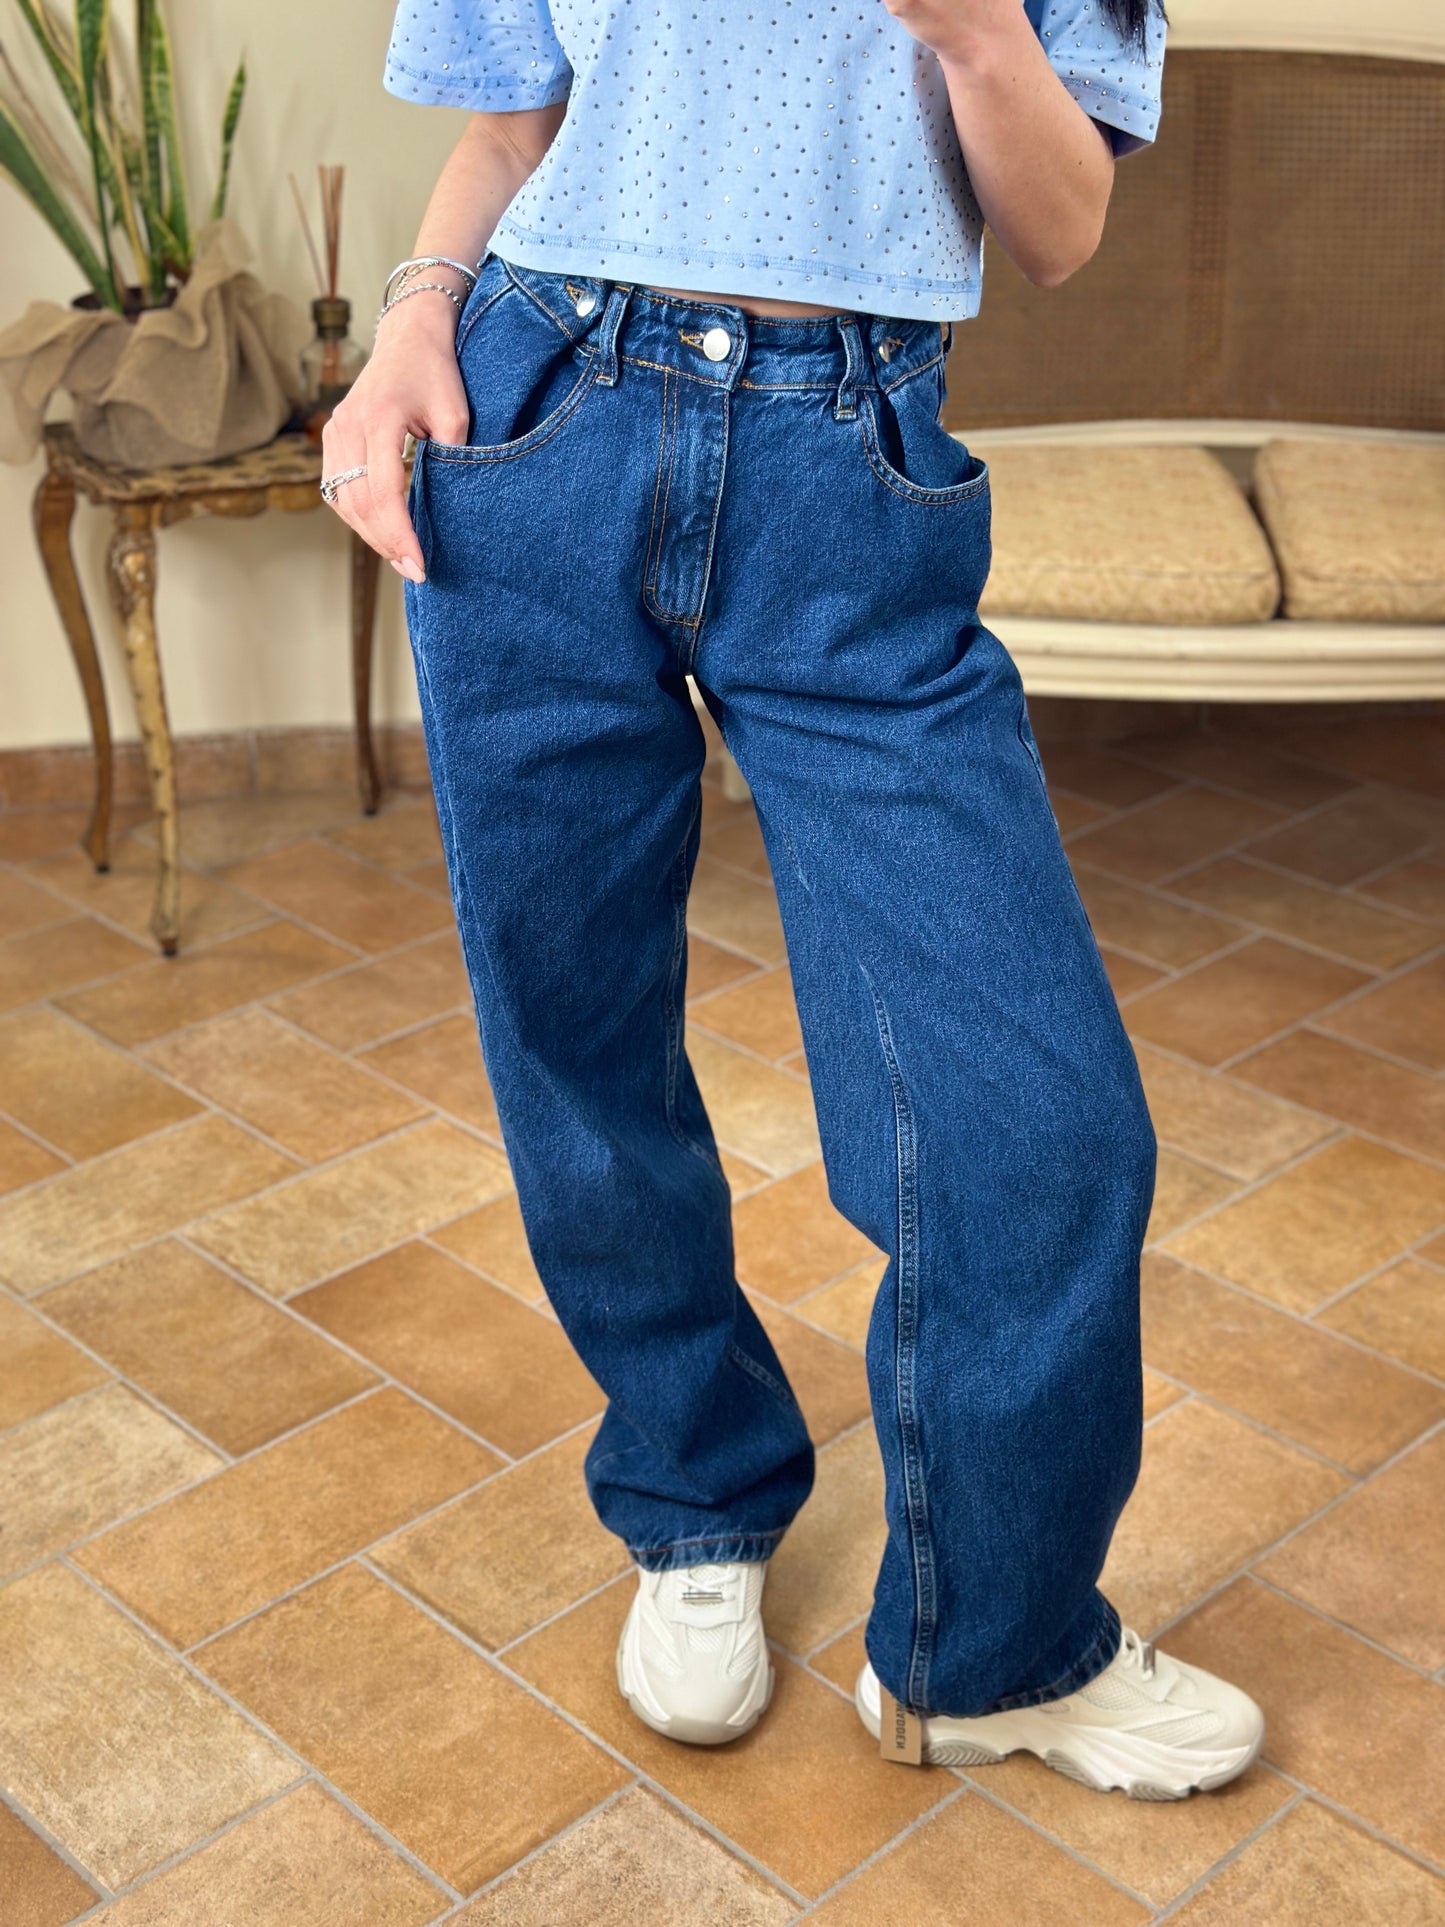 UNI mè jeans con pences (removibili)